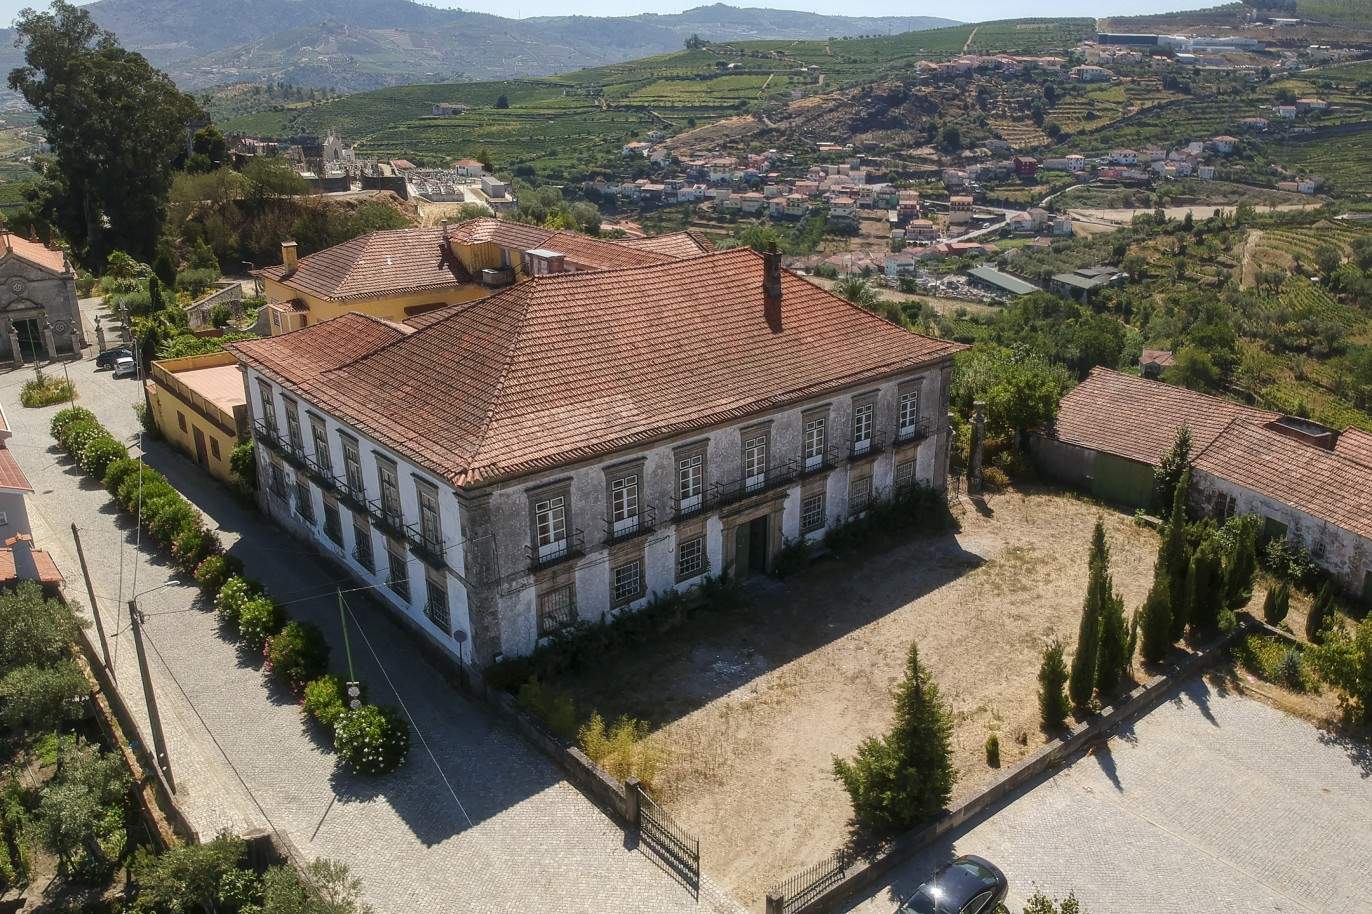 Venda: Palacete para restaurar com jardins, Lamego, Alto Douro _207355